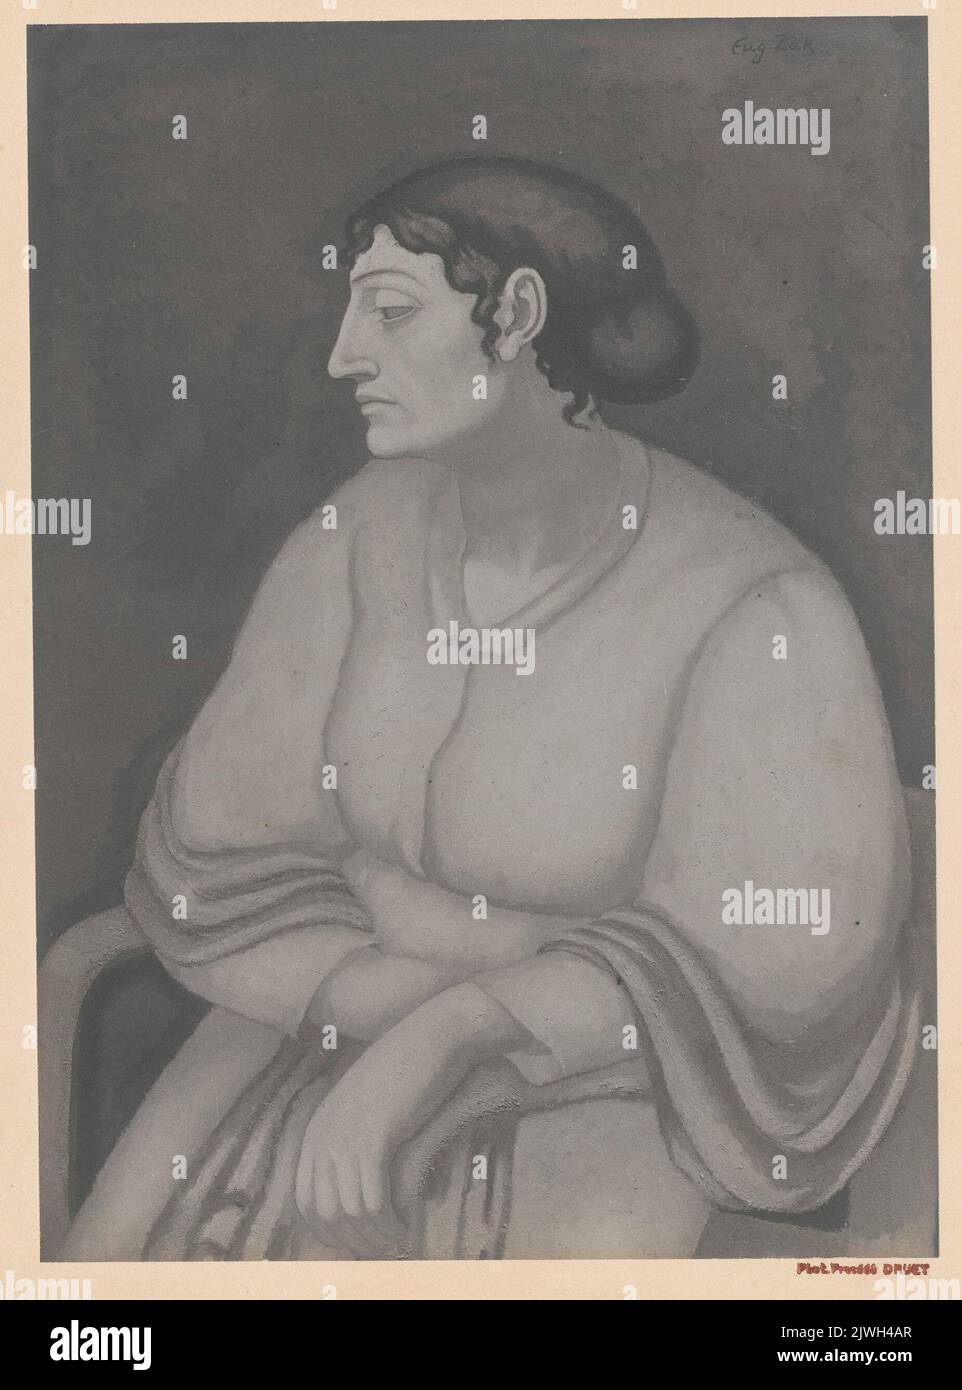 Fotografia della pittura: Eugeniusz Zak (1884-1926), Kobieta siedząca w fotelu [Donna in poltrona], 1913. Druet, Eugene (1867-1916), fotografo Foto Stock